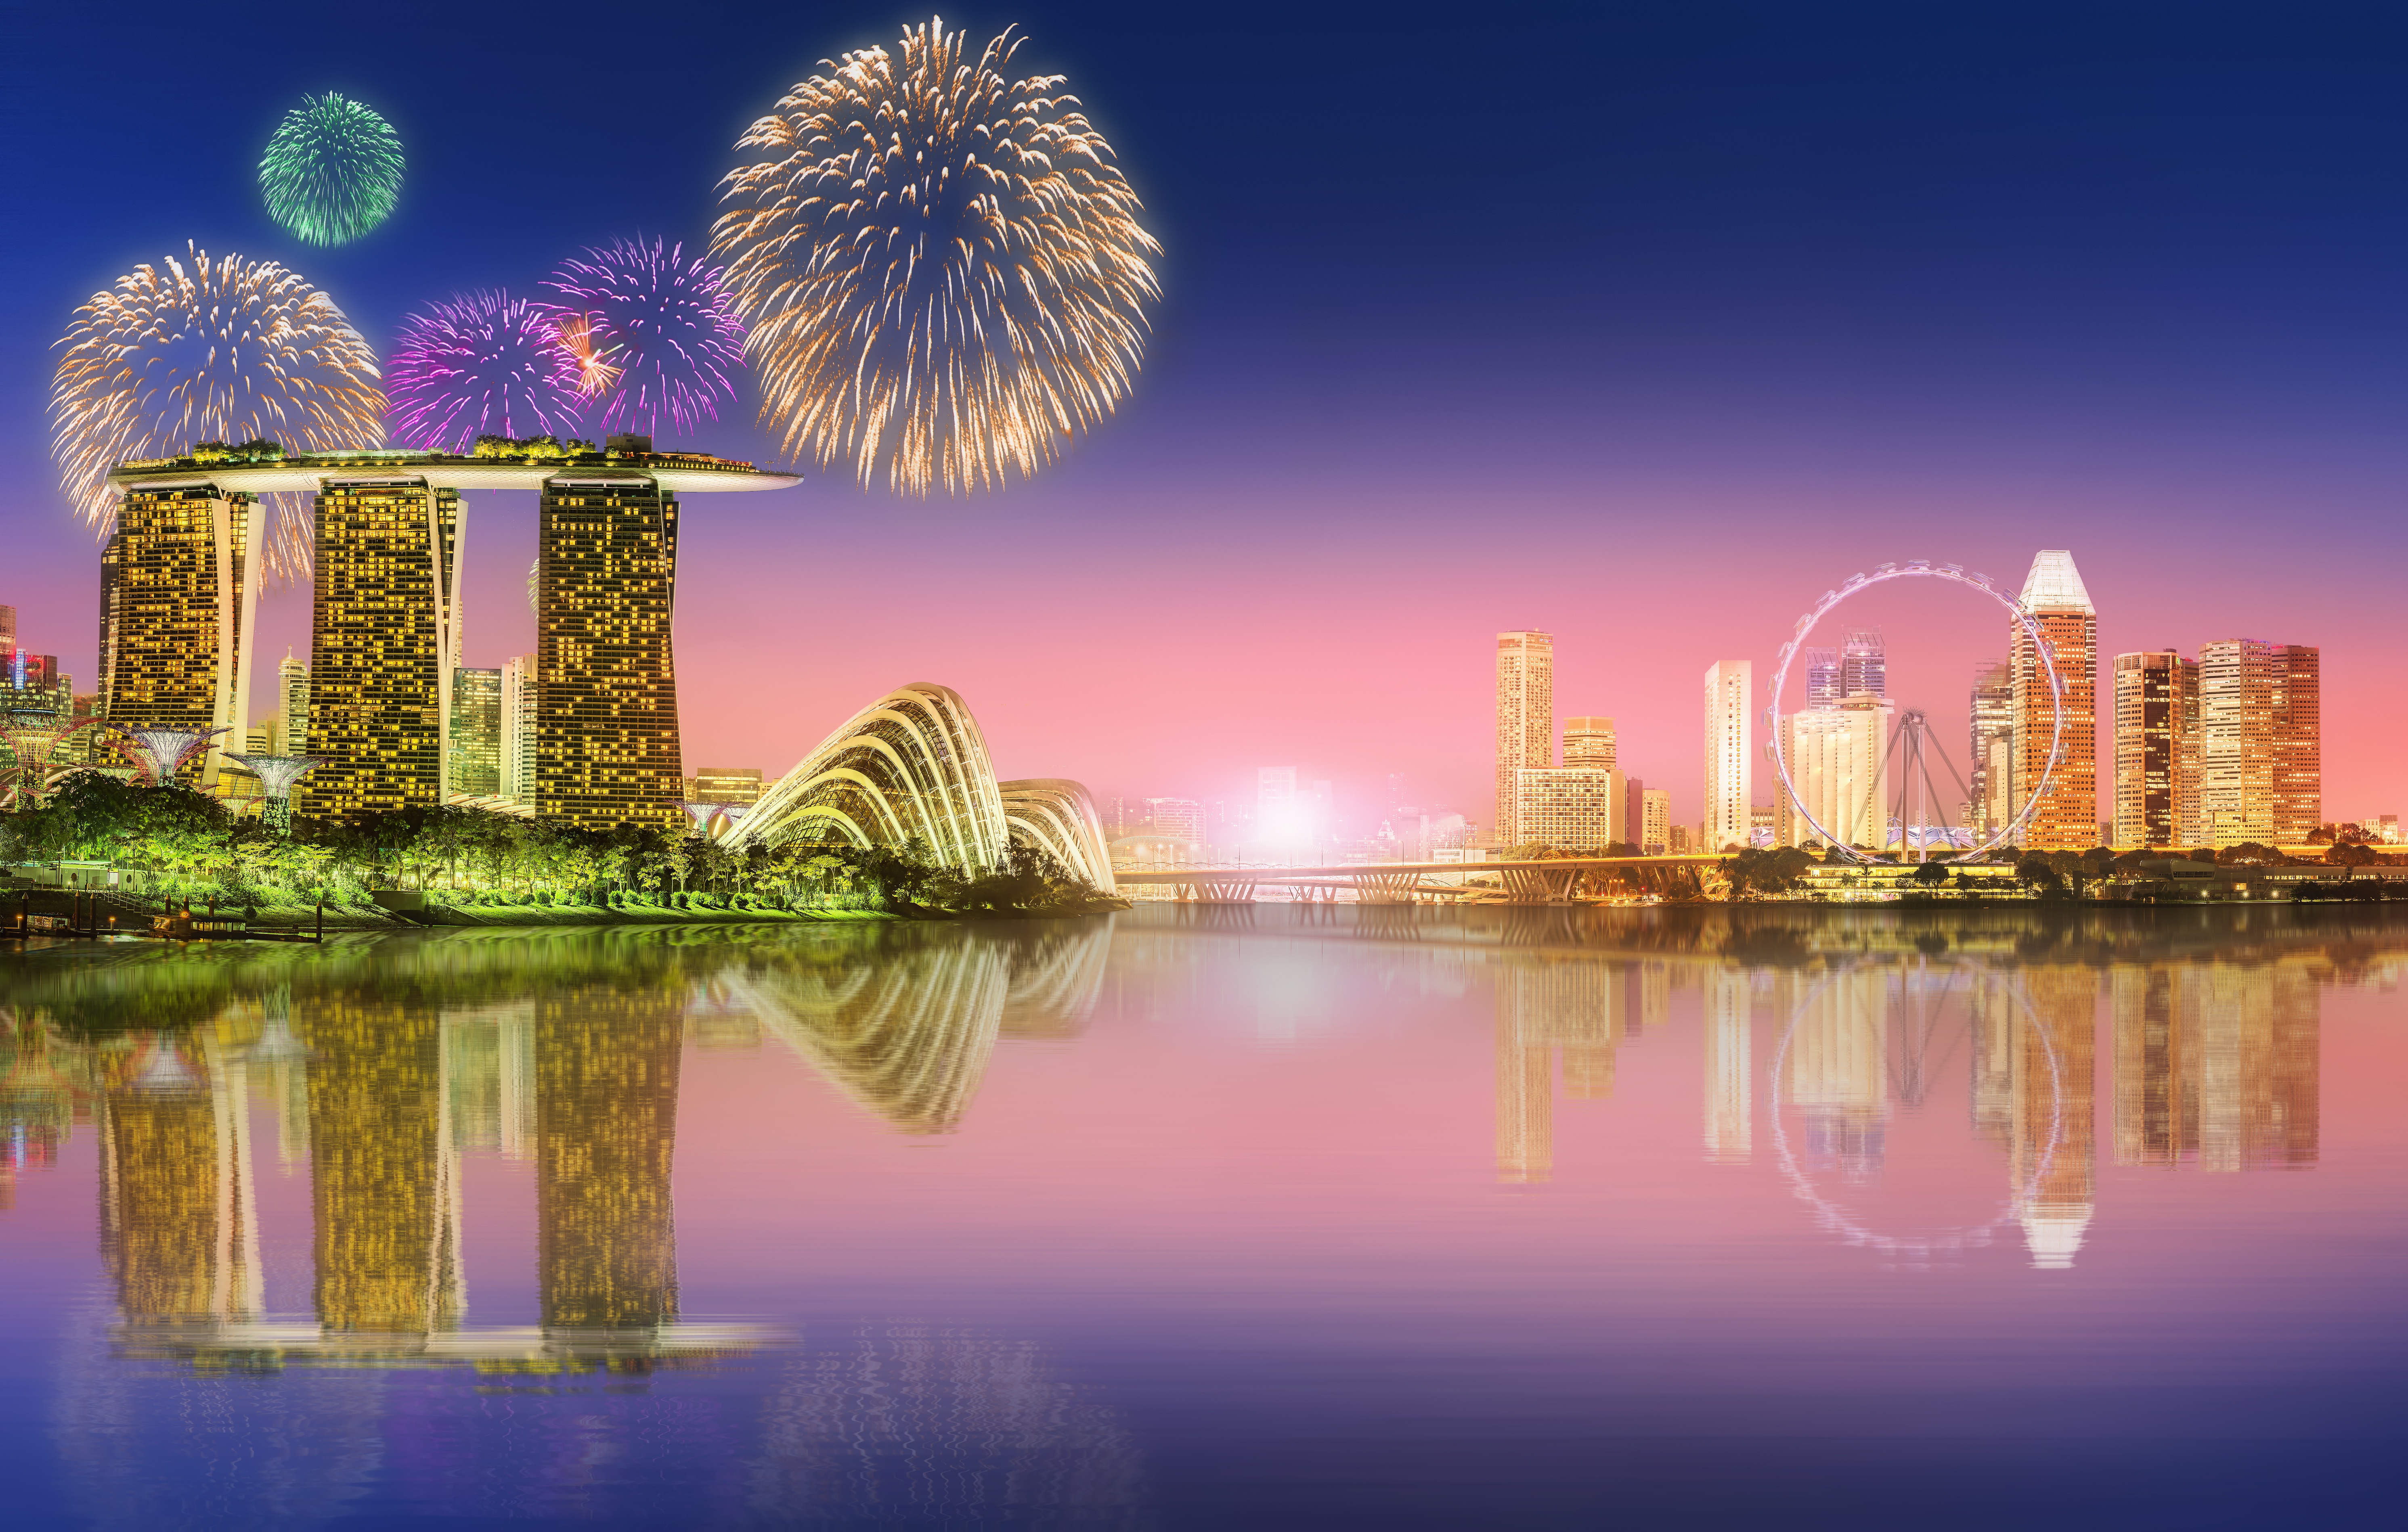 Скачать обои бесплатно Ночь, Отражение, Здание, Сингапур, Сделано Человеком, Фейверки, Marina Bay Sands картинка на рабочий стол ПК